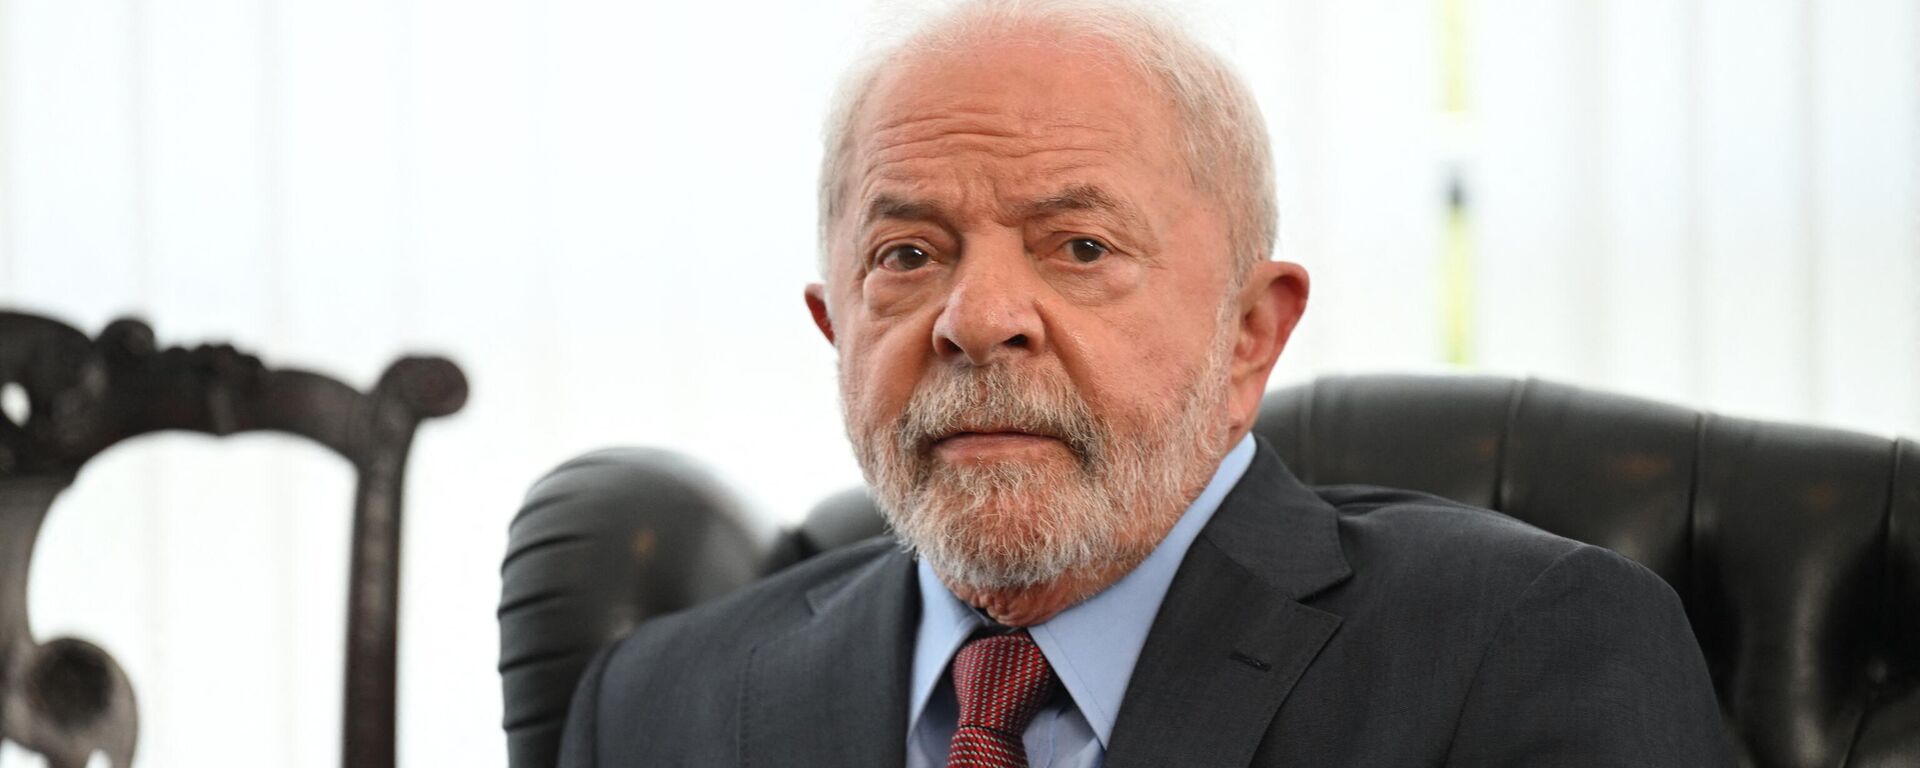 O presidente do Brasil, Luiz Inácio Lula da Silva, em Brasília (DF), em 2 de janeiro de 2023 - Sputnik Brasil, 1920, 04.01.2023